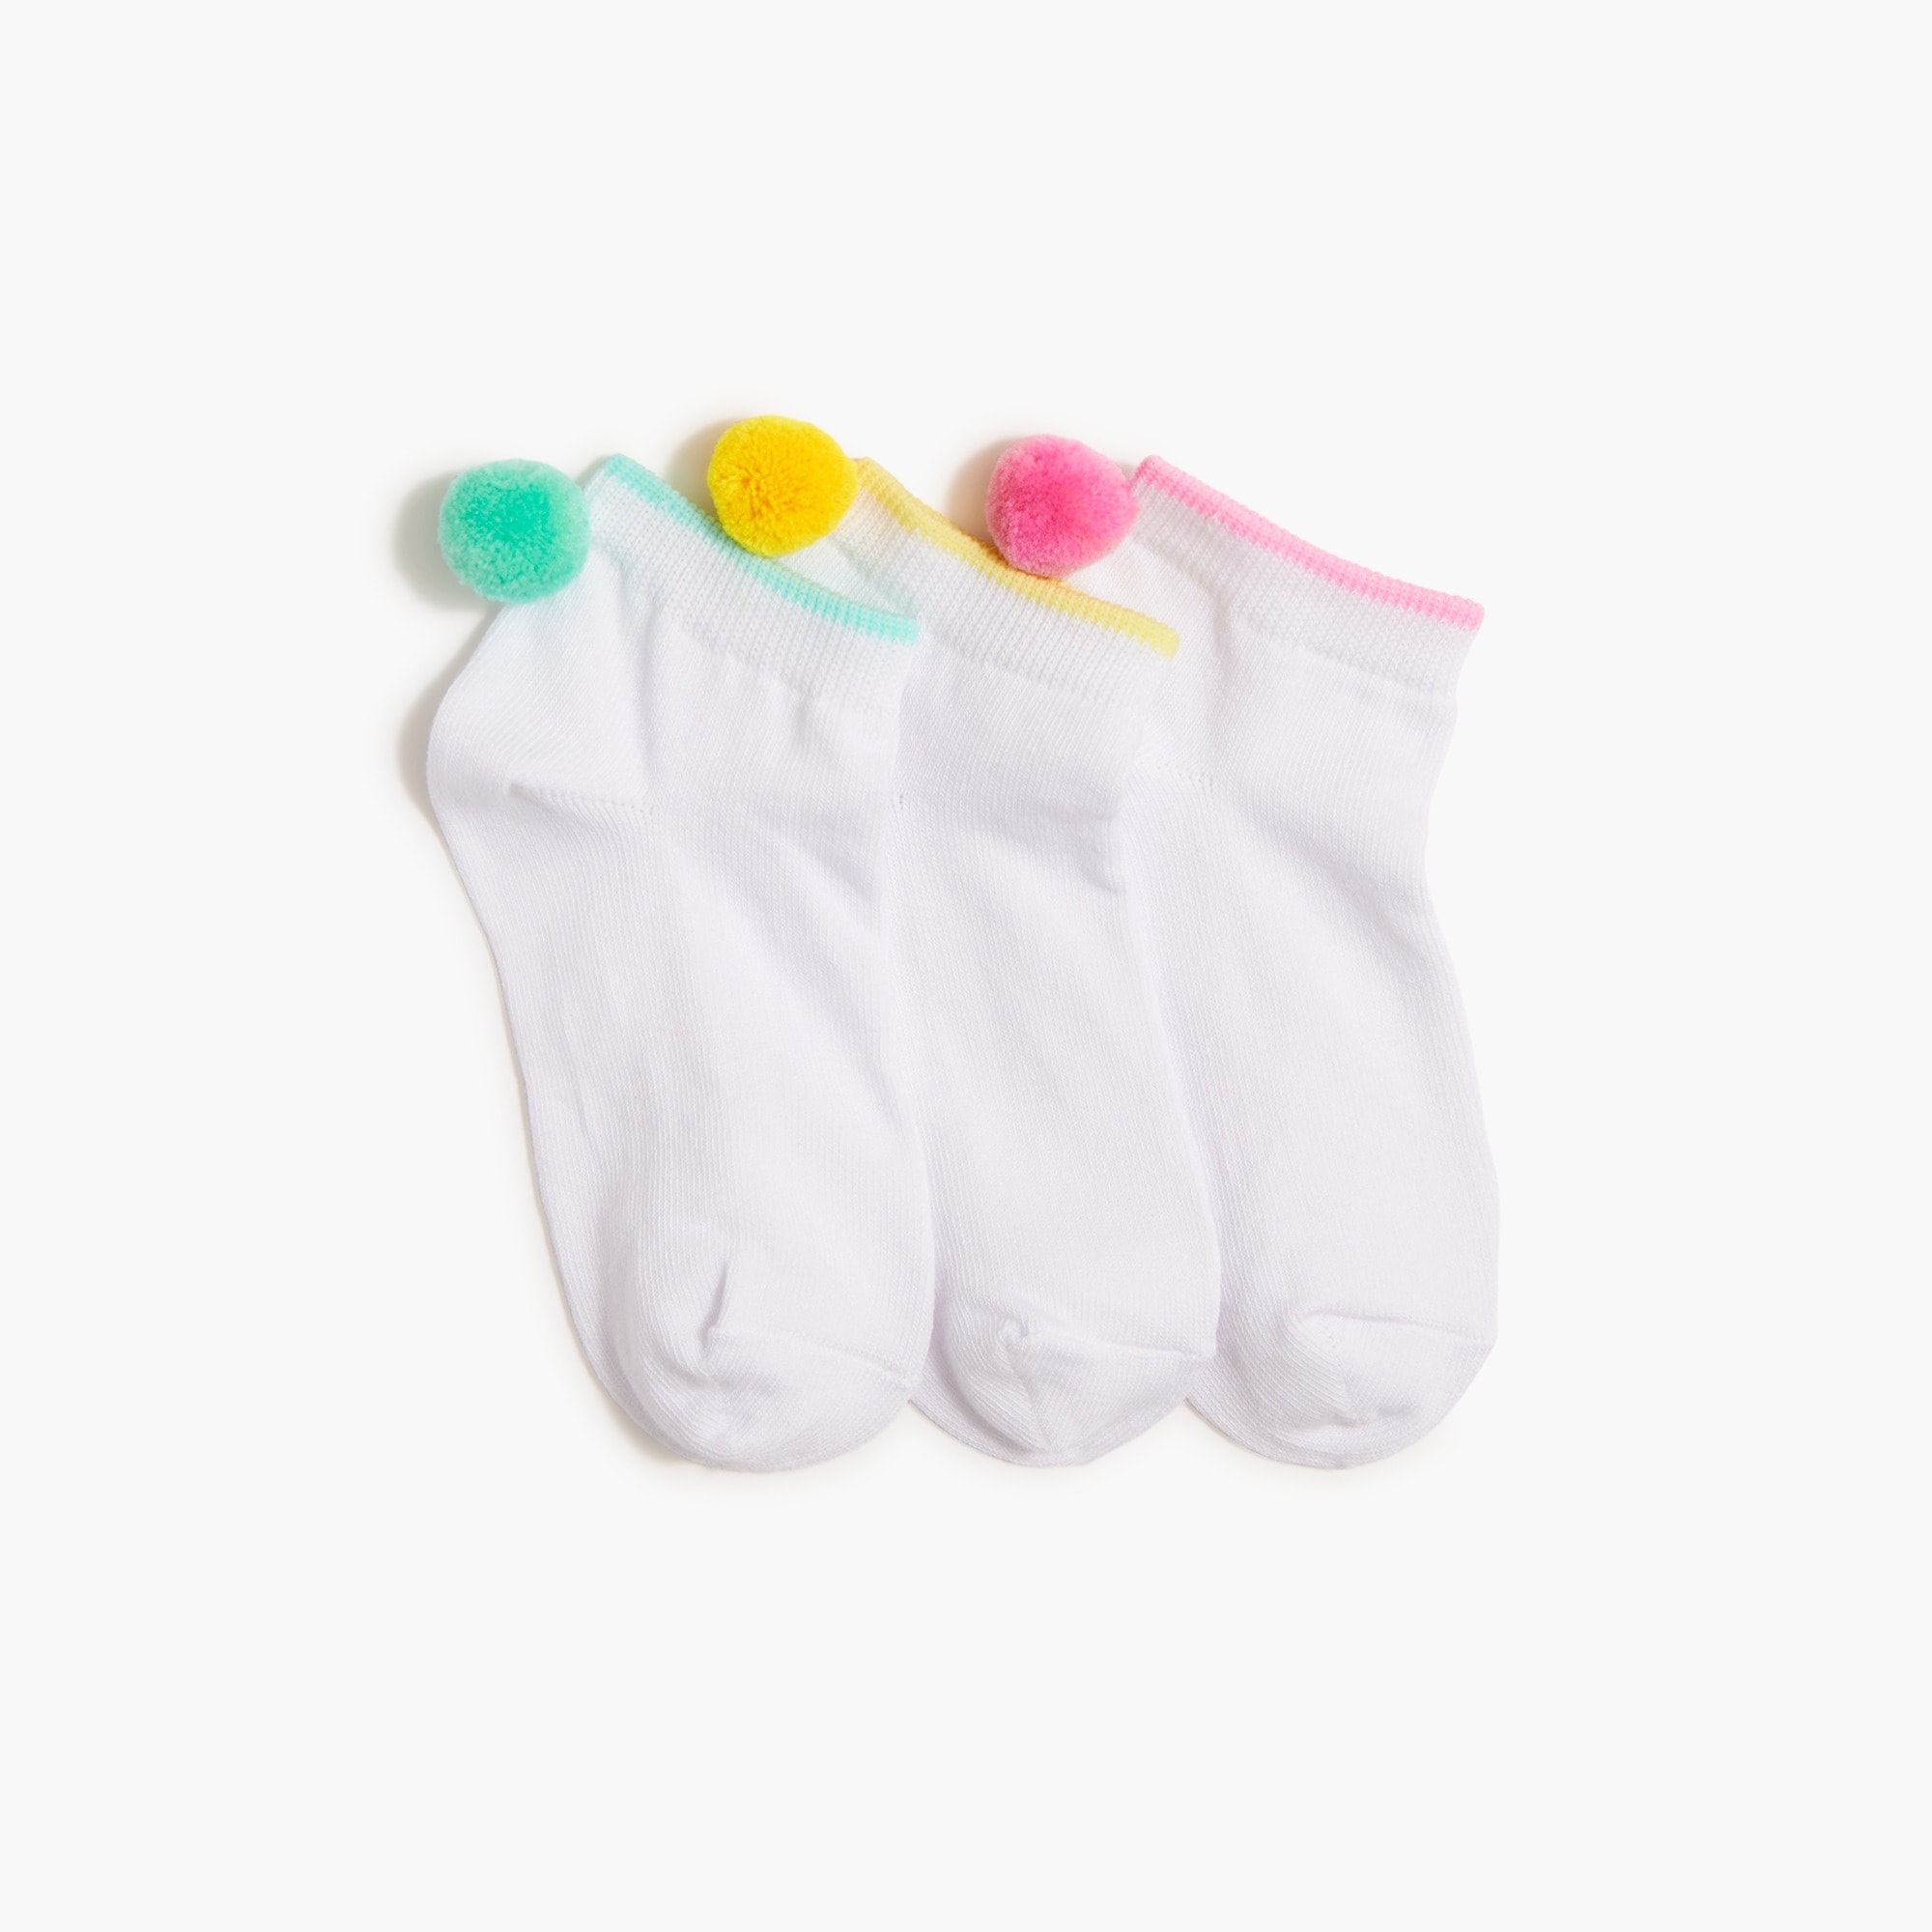 Girls' pom-pom socks three-pack